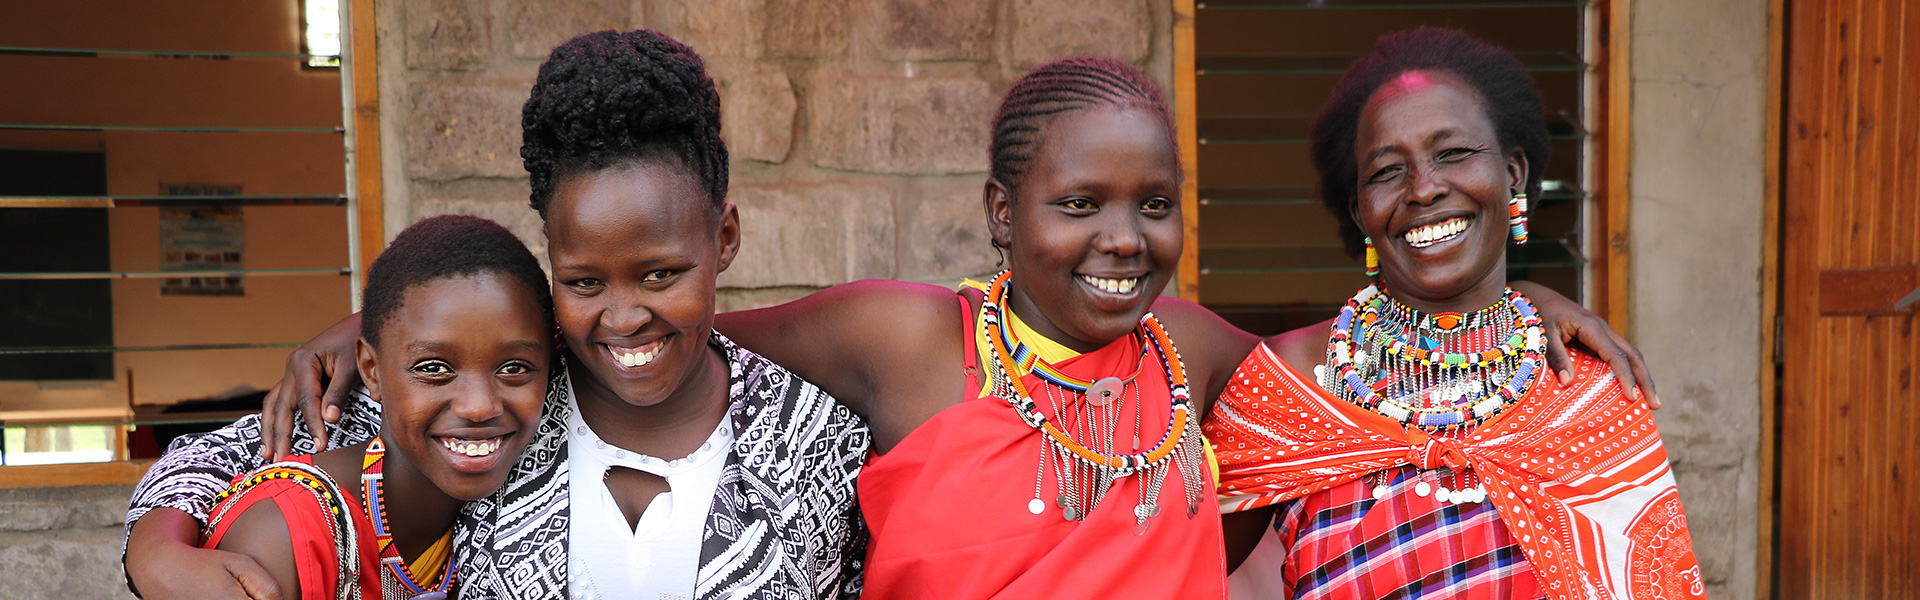 kenya-masai-mara-girls-leadership-school-talek